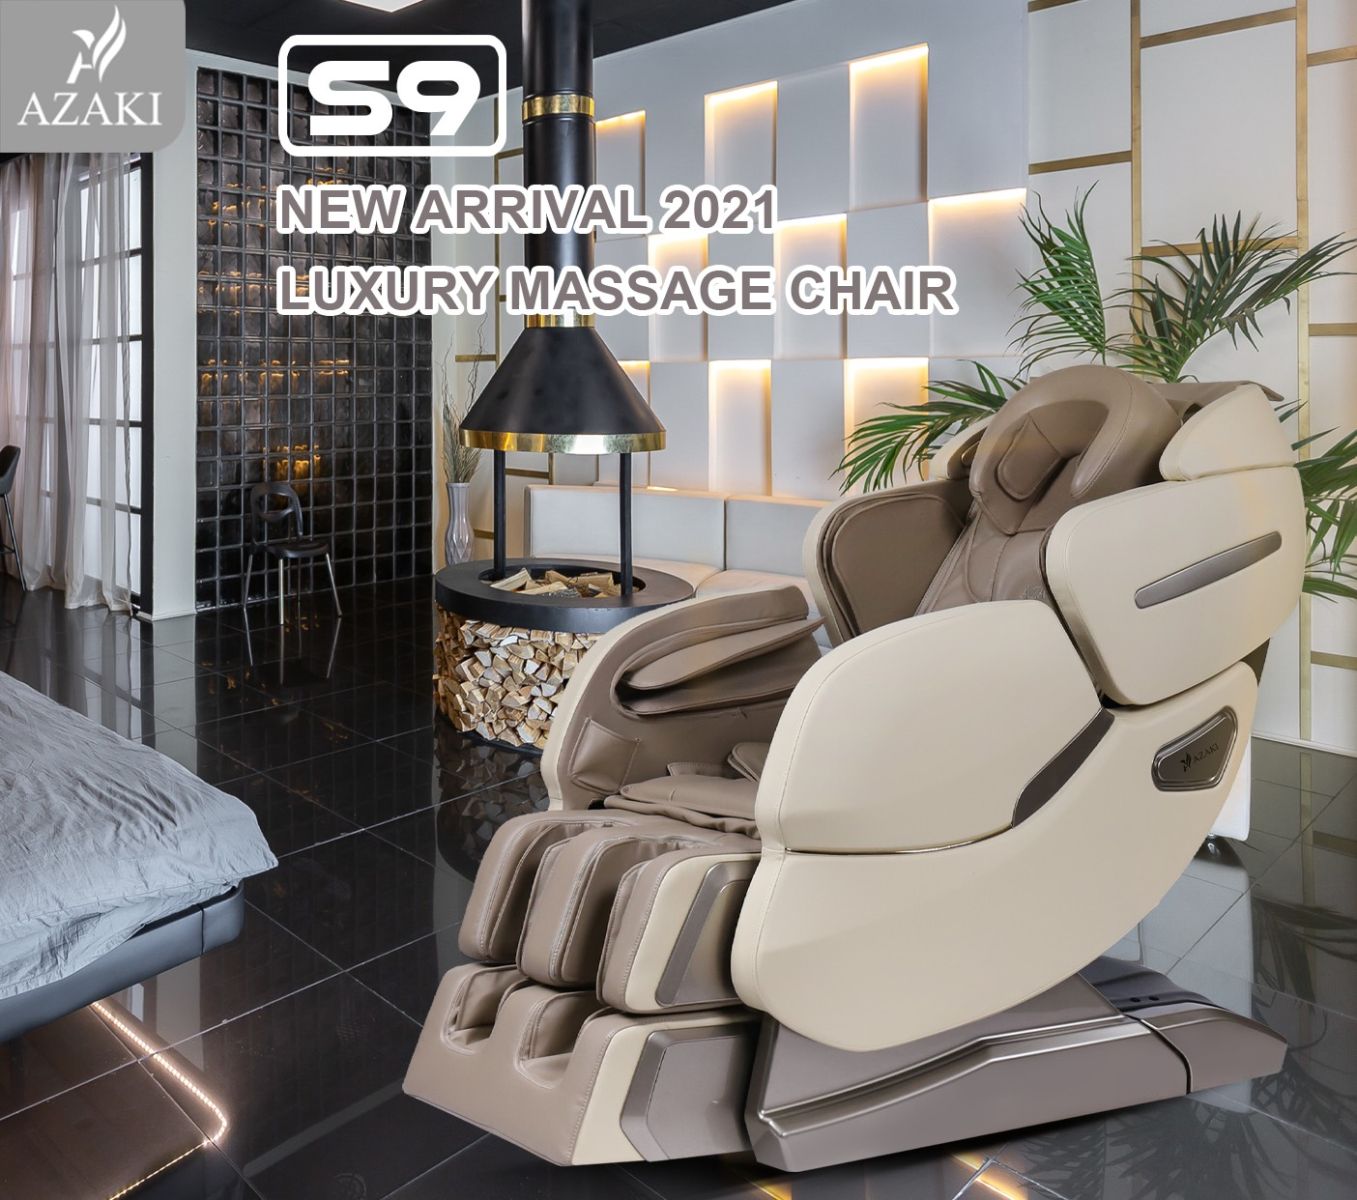 công nghệ và tính năng của ghế massage Azaki S9 - Ghi Xám chính hãng